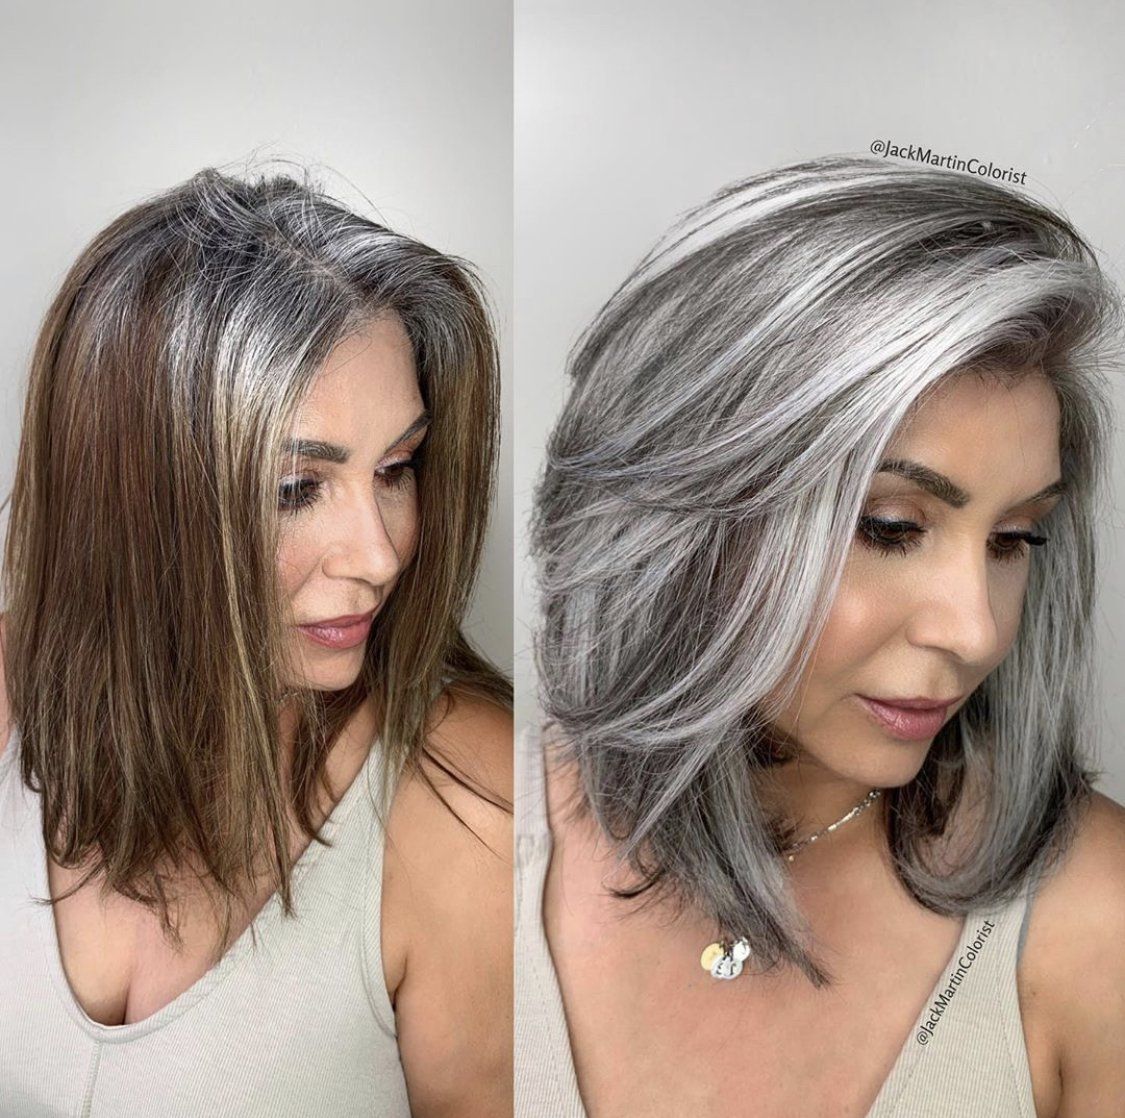 16 hair Gray tips ideas